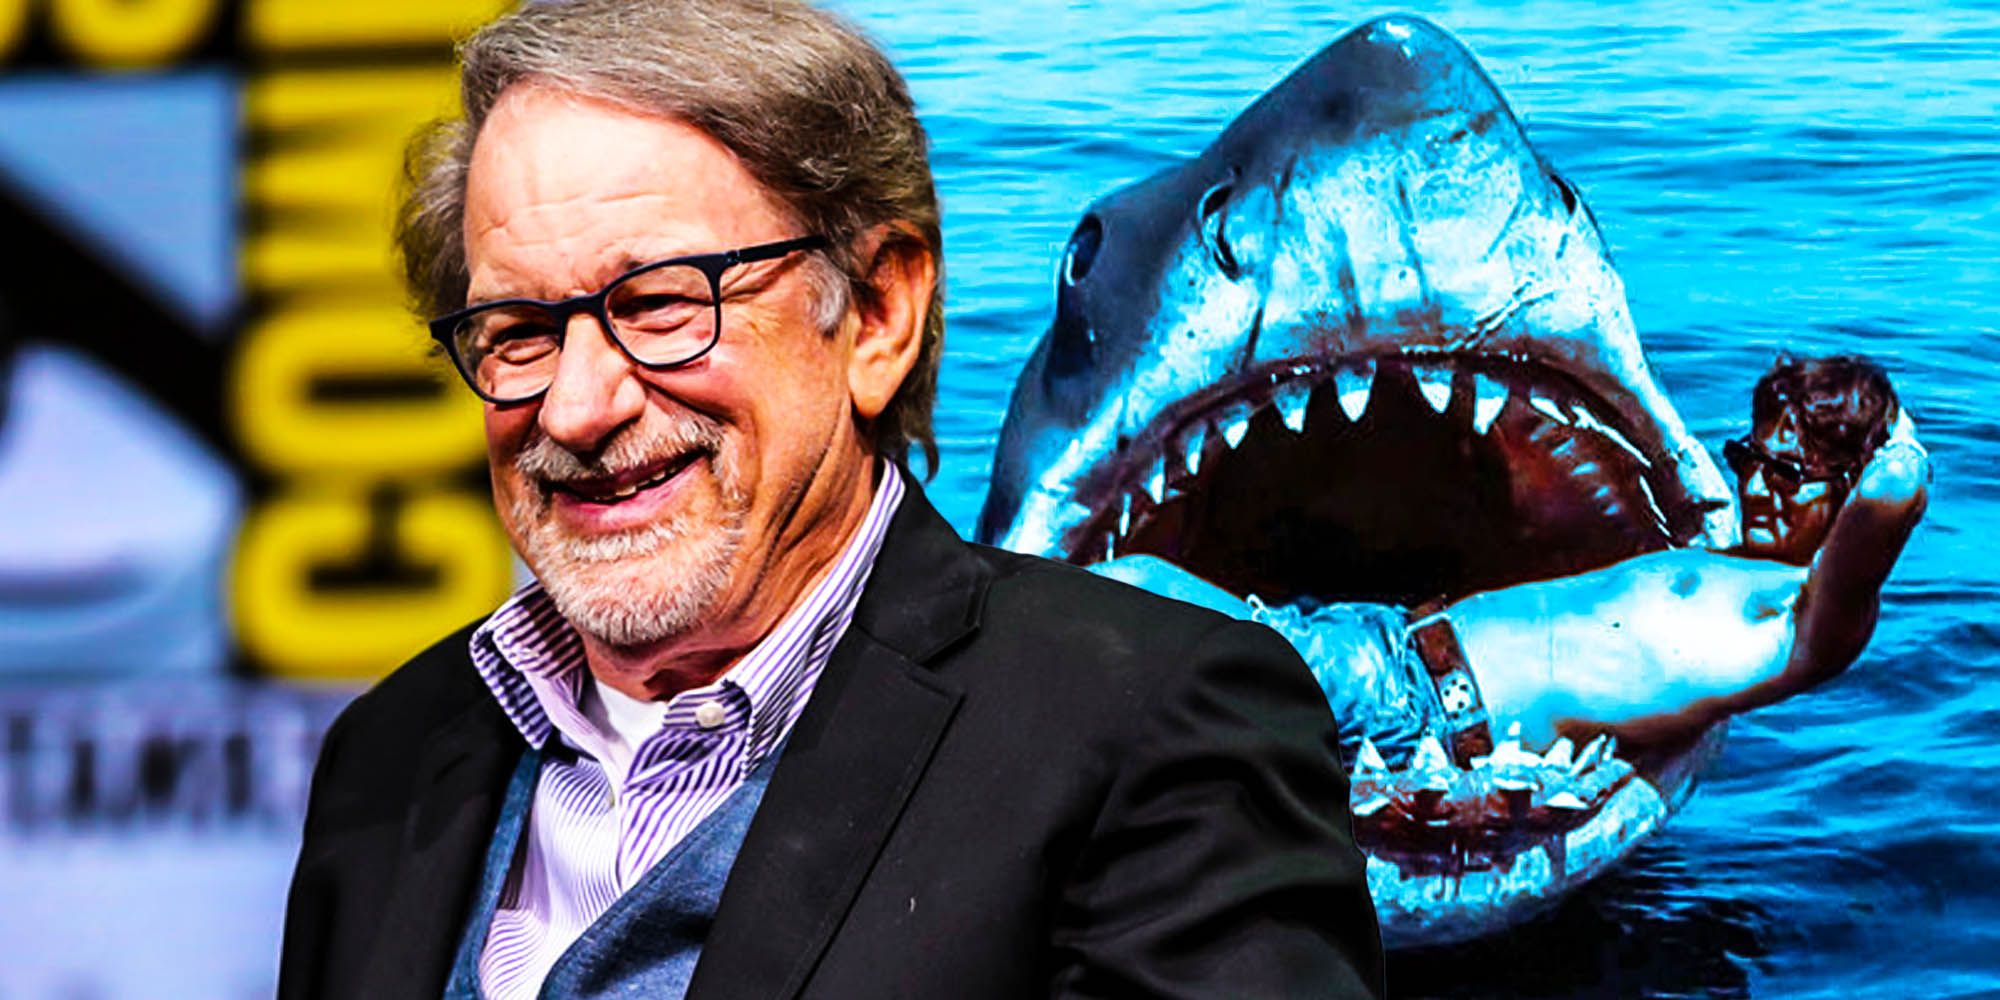 Jaws gave steven spielberg nightmares